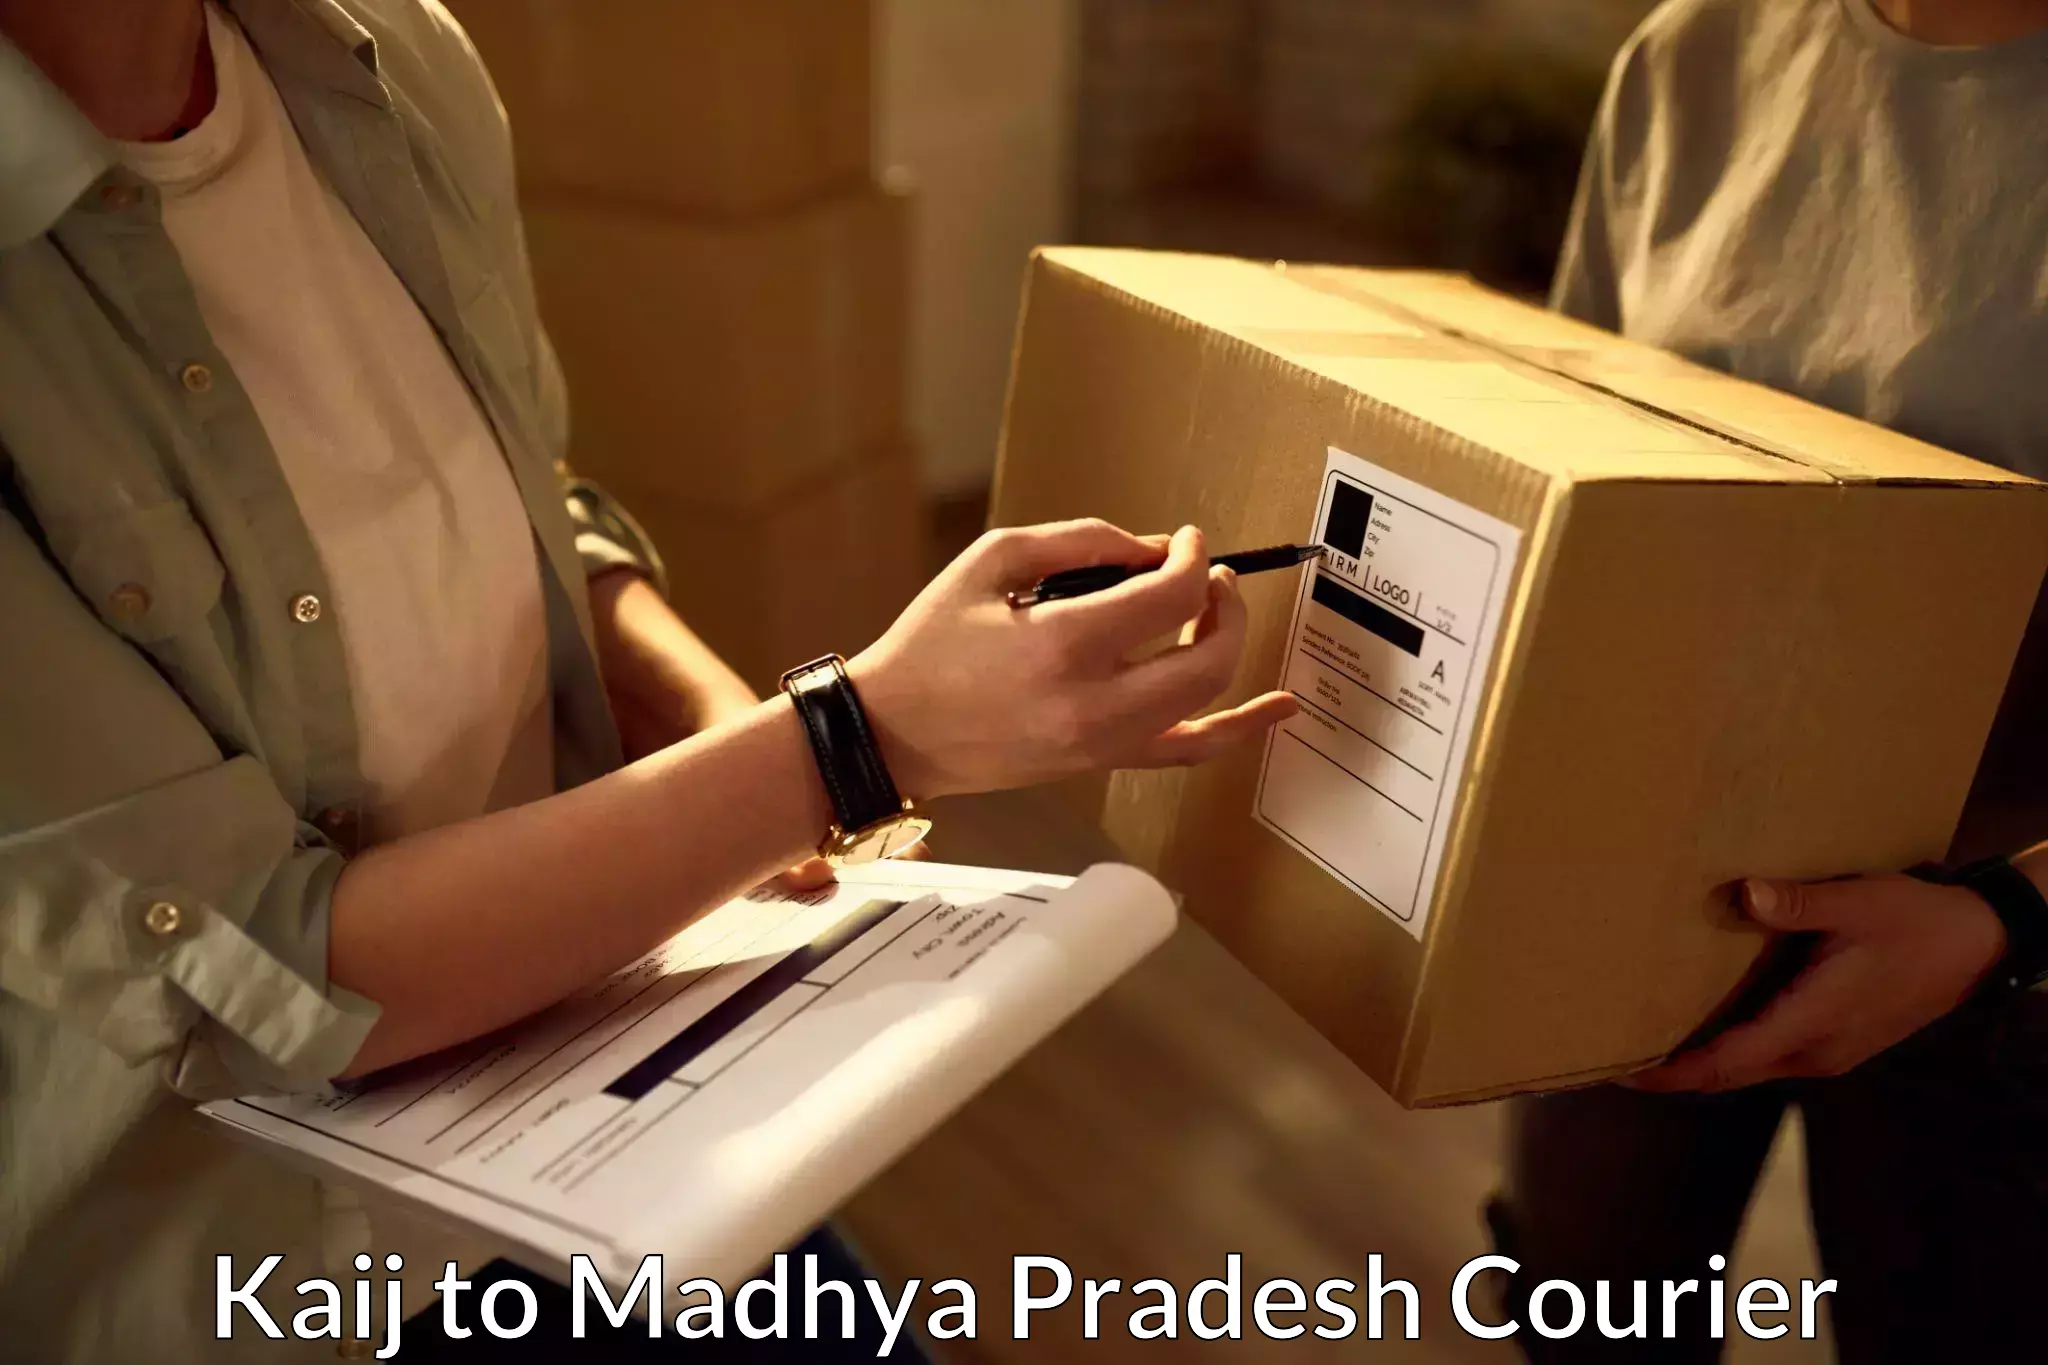 Urgent courier needs Kaij to Madhya Pradesh